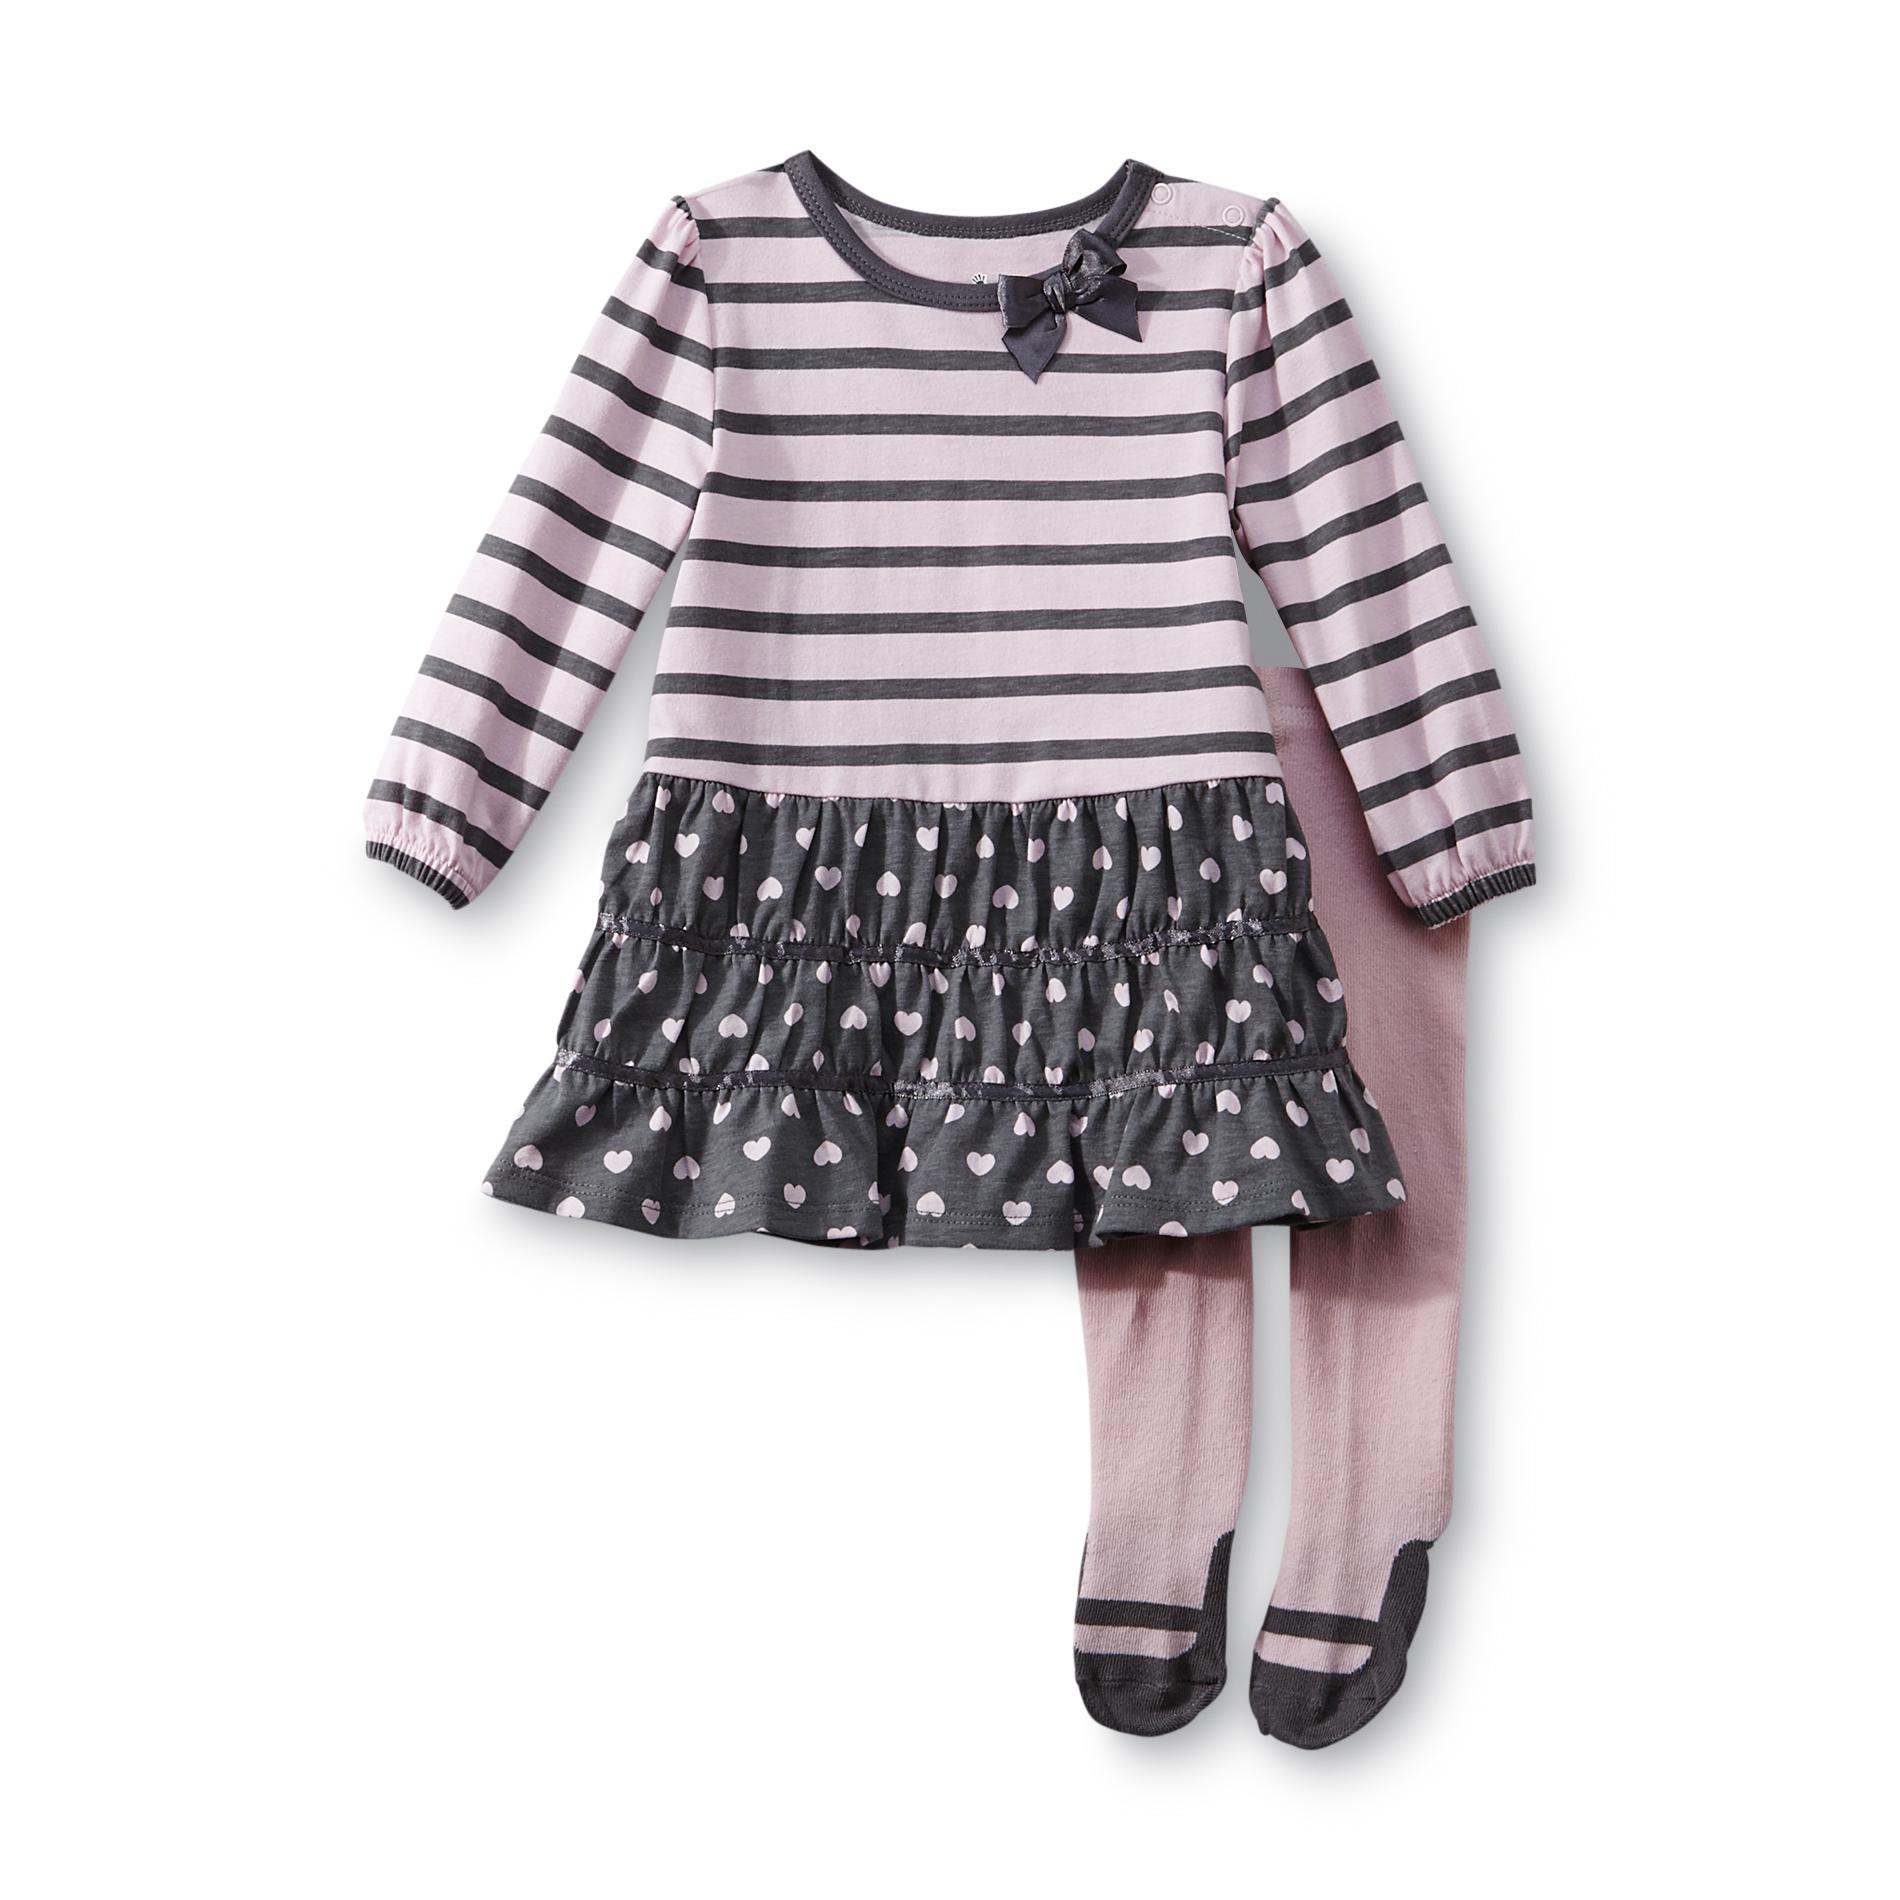 Small Wonders Newborn Girl's Dress & Tights - Striped